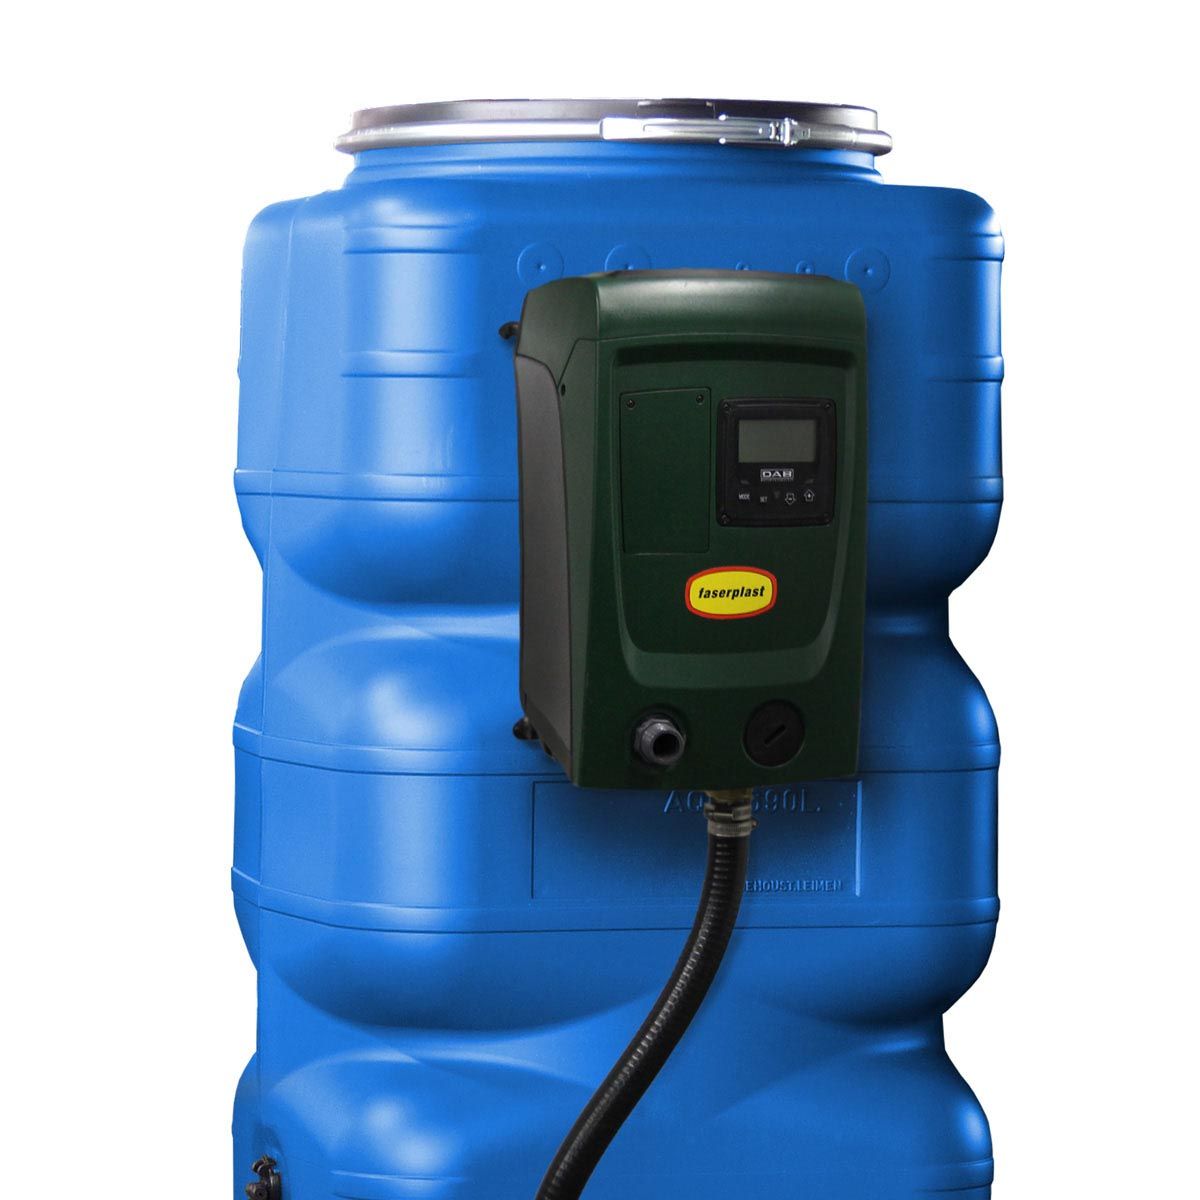 Hauswasseranlage HaWa 690, mit aufgebauter Pumpe e.sybox mini 3